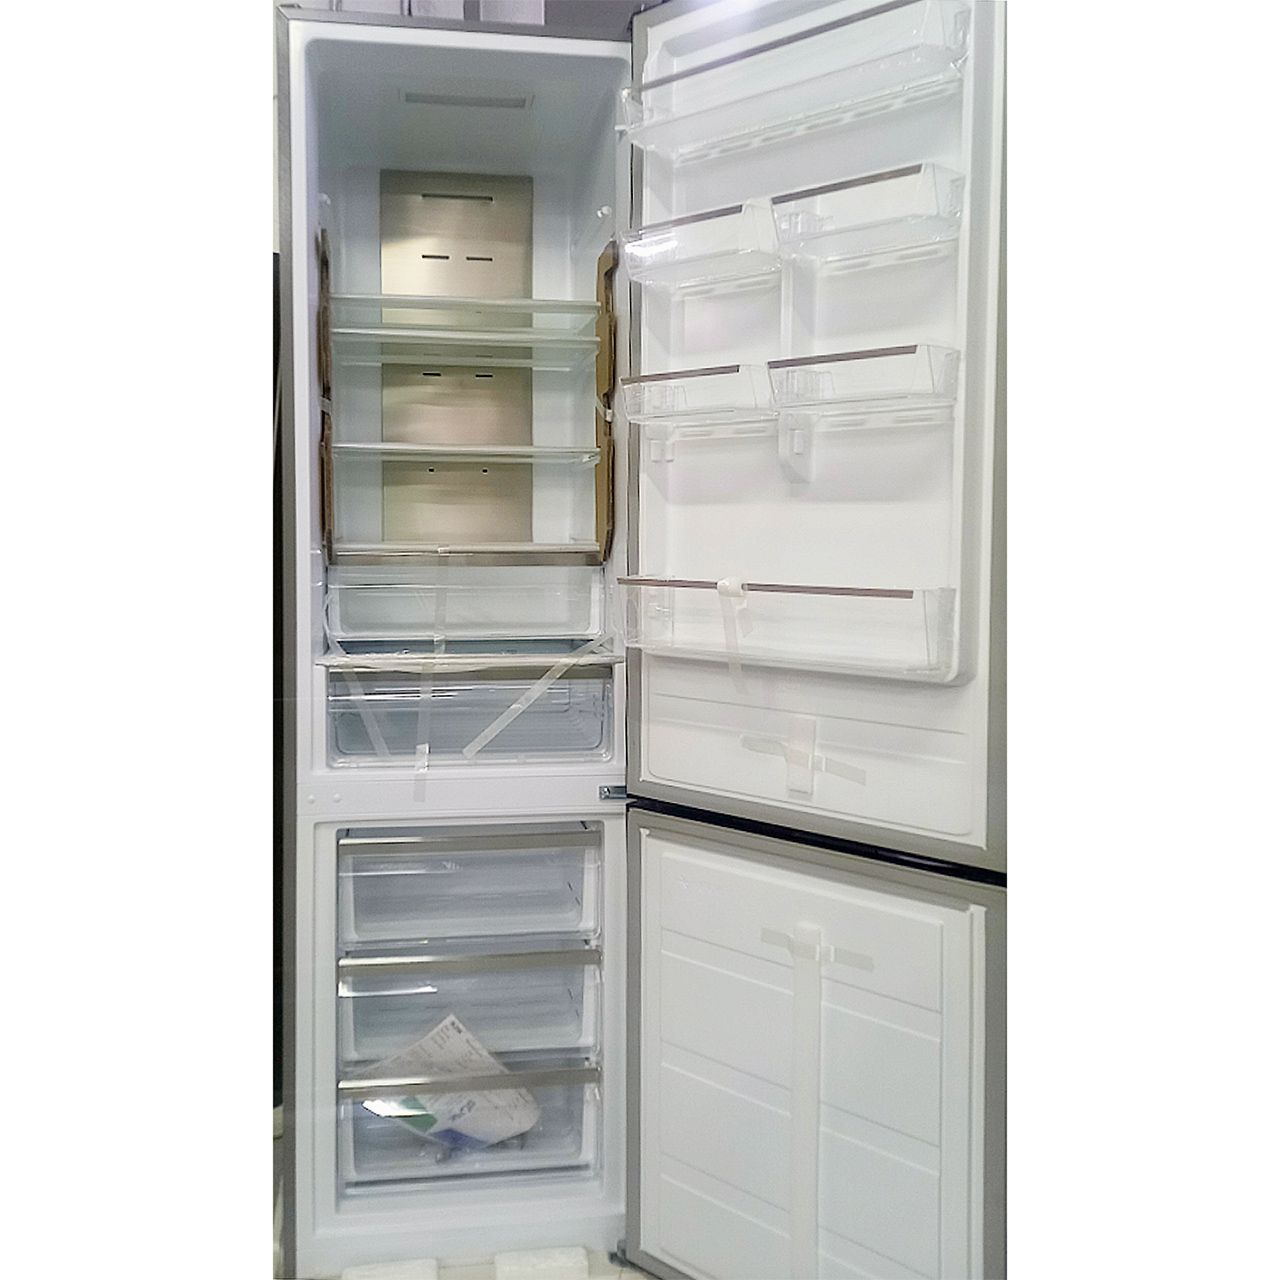 Холодильник двухкамерный Blesk 316 литров